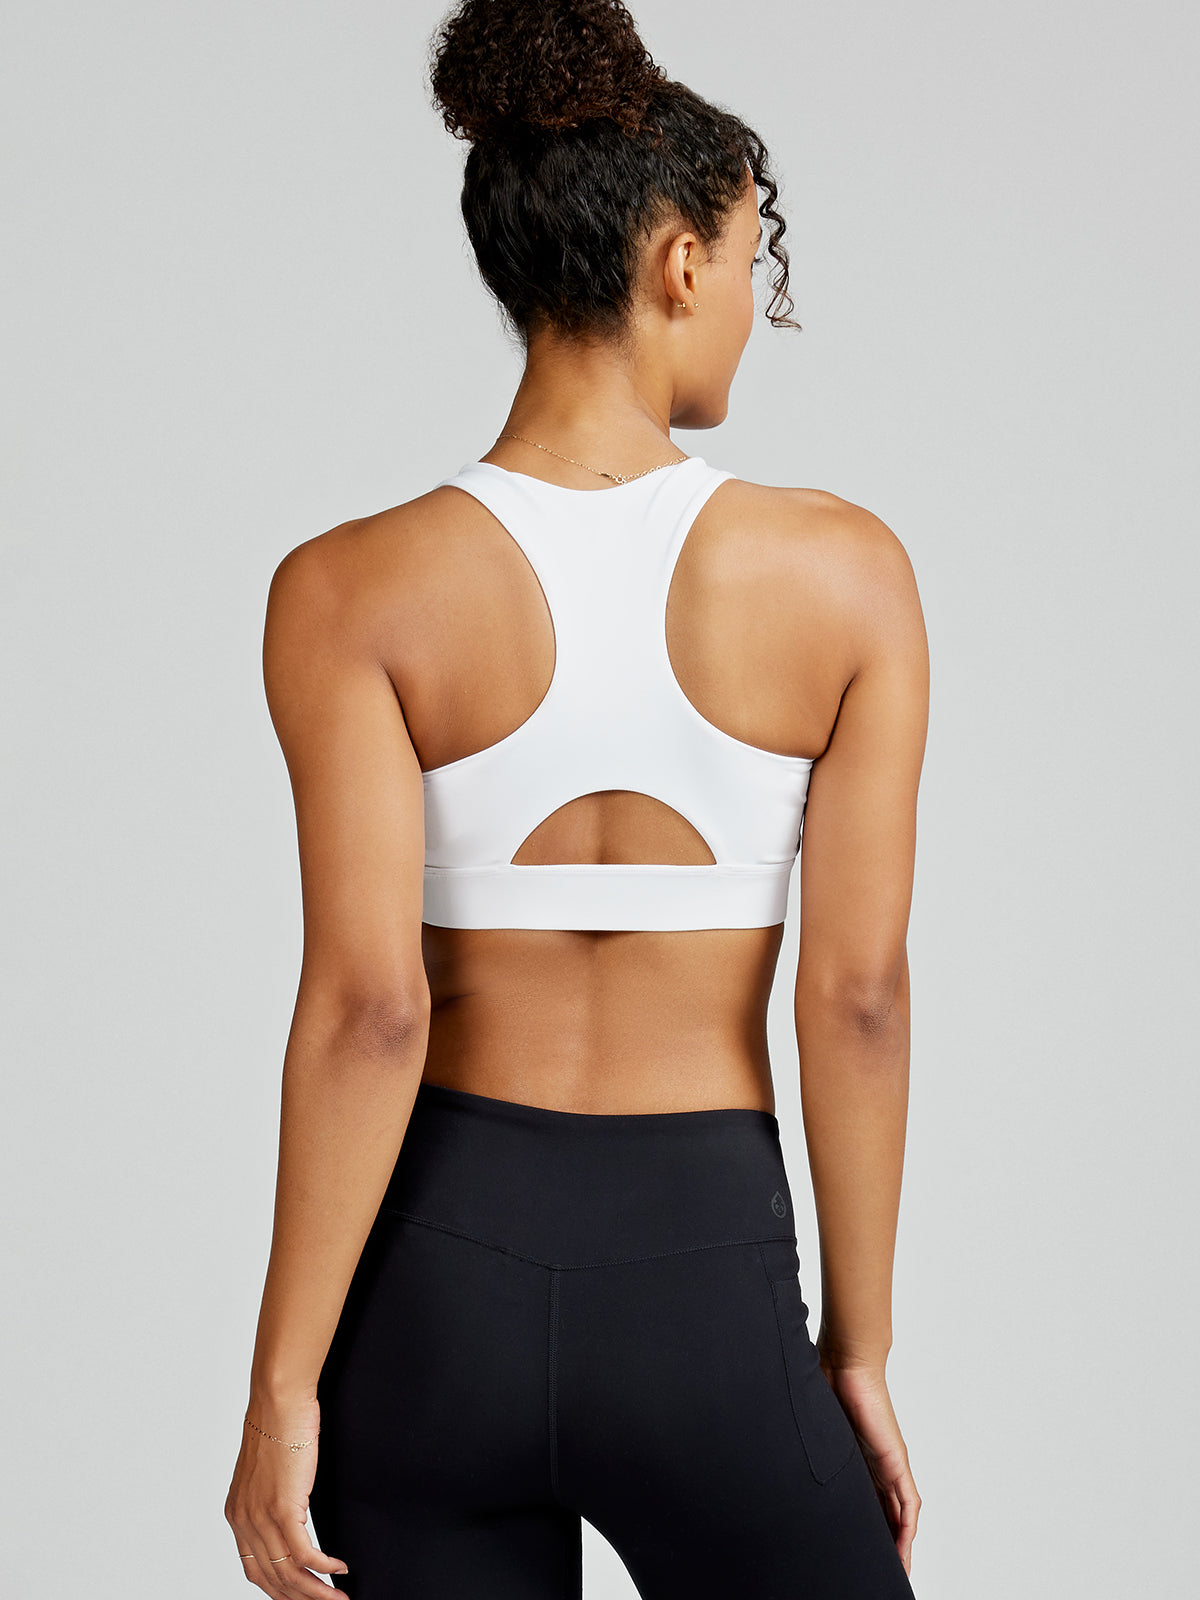 Bra-Tastic- For Yoga Dance And Ever Wear - Medium 34-36(White)